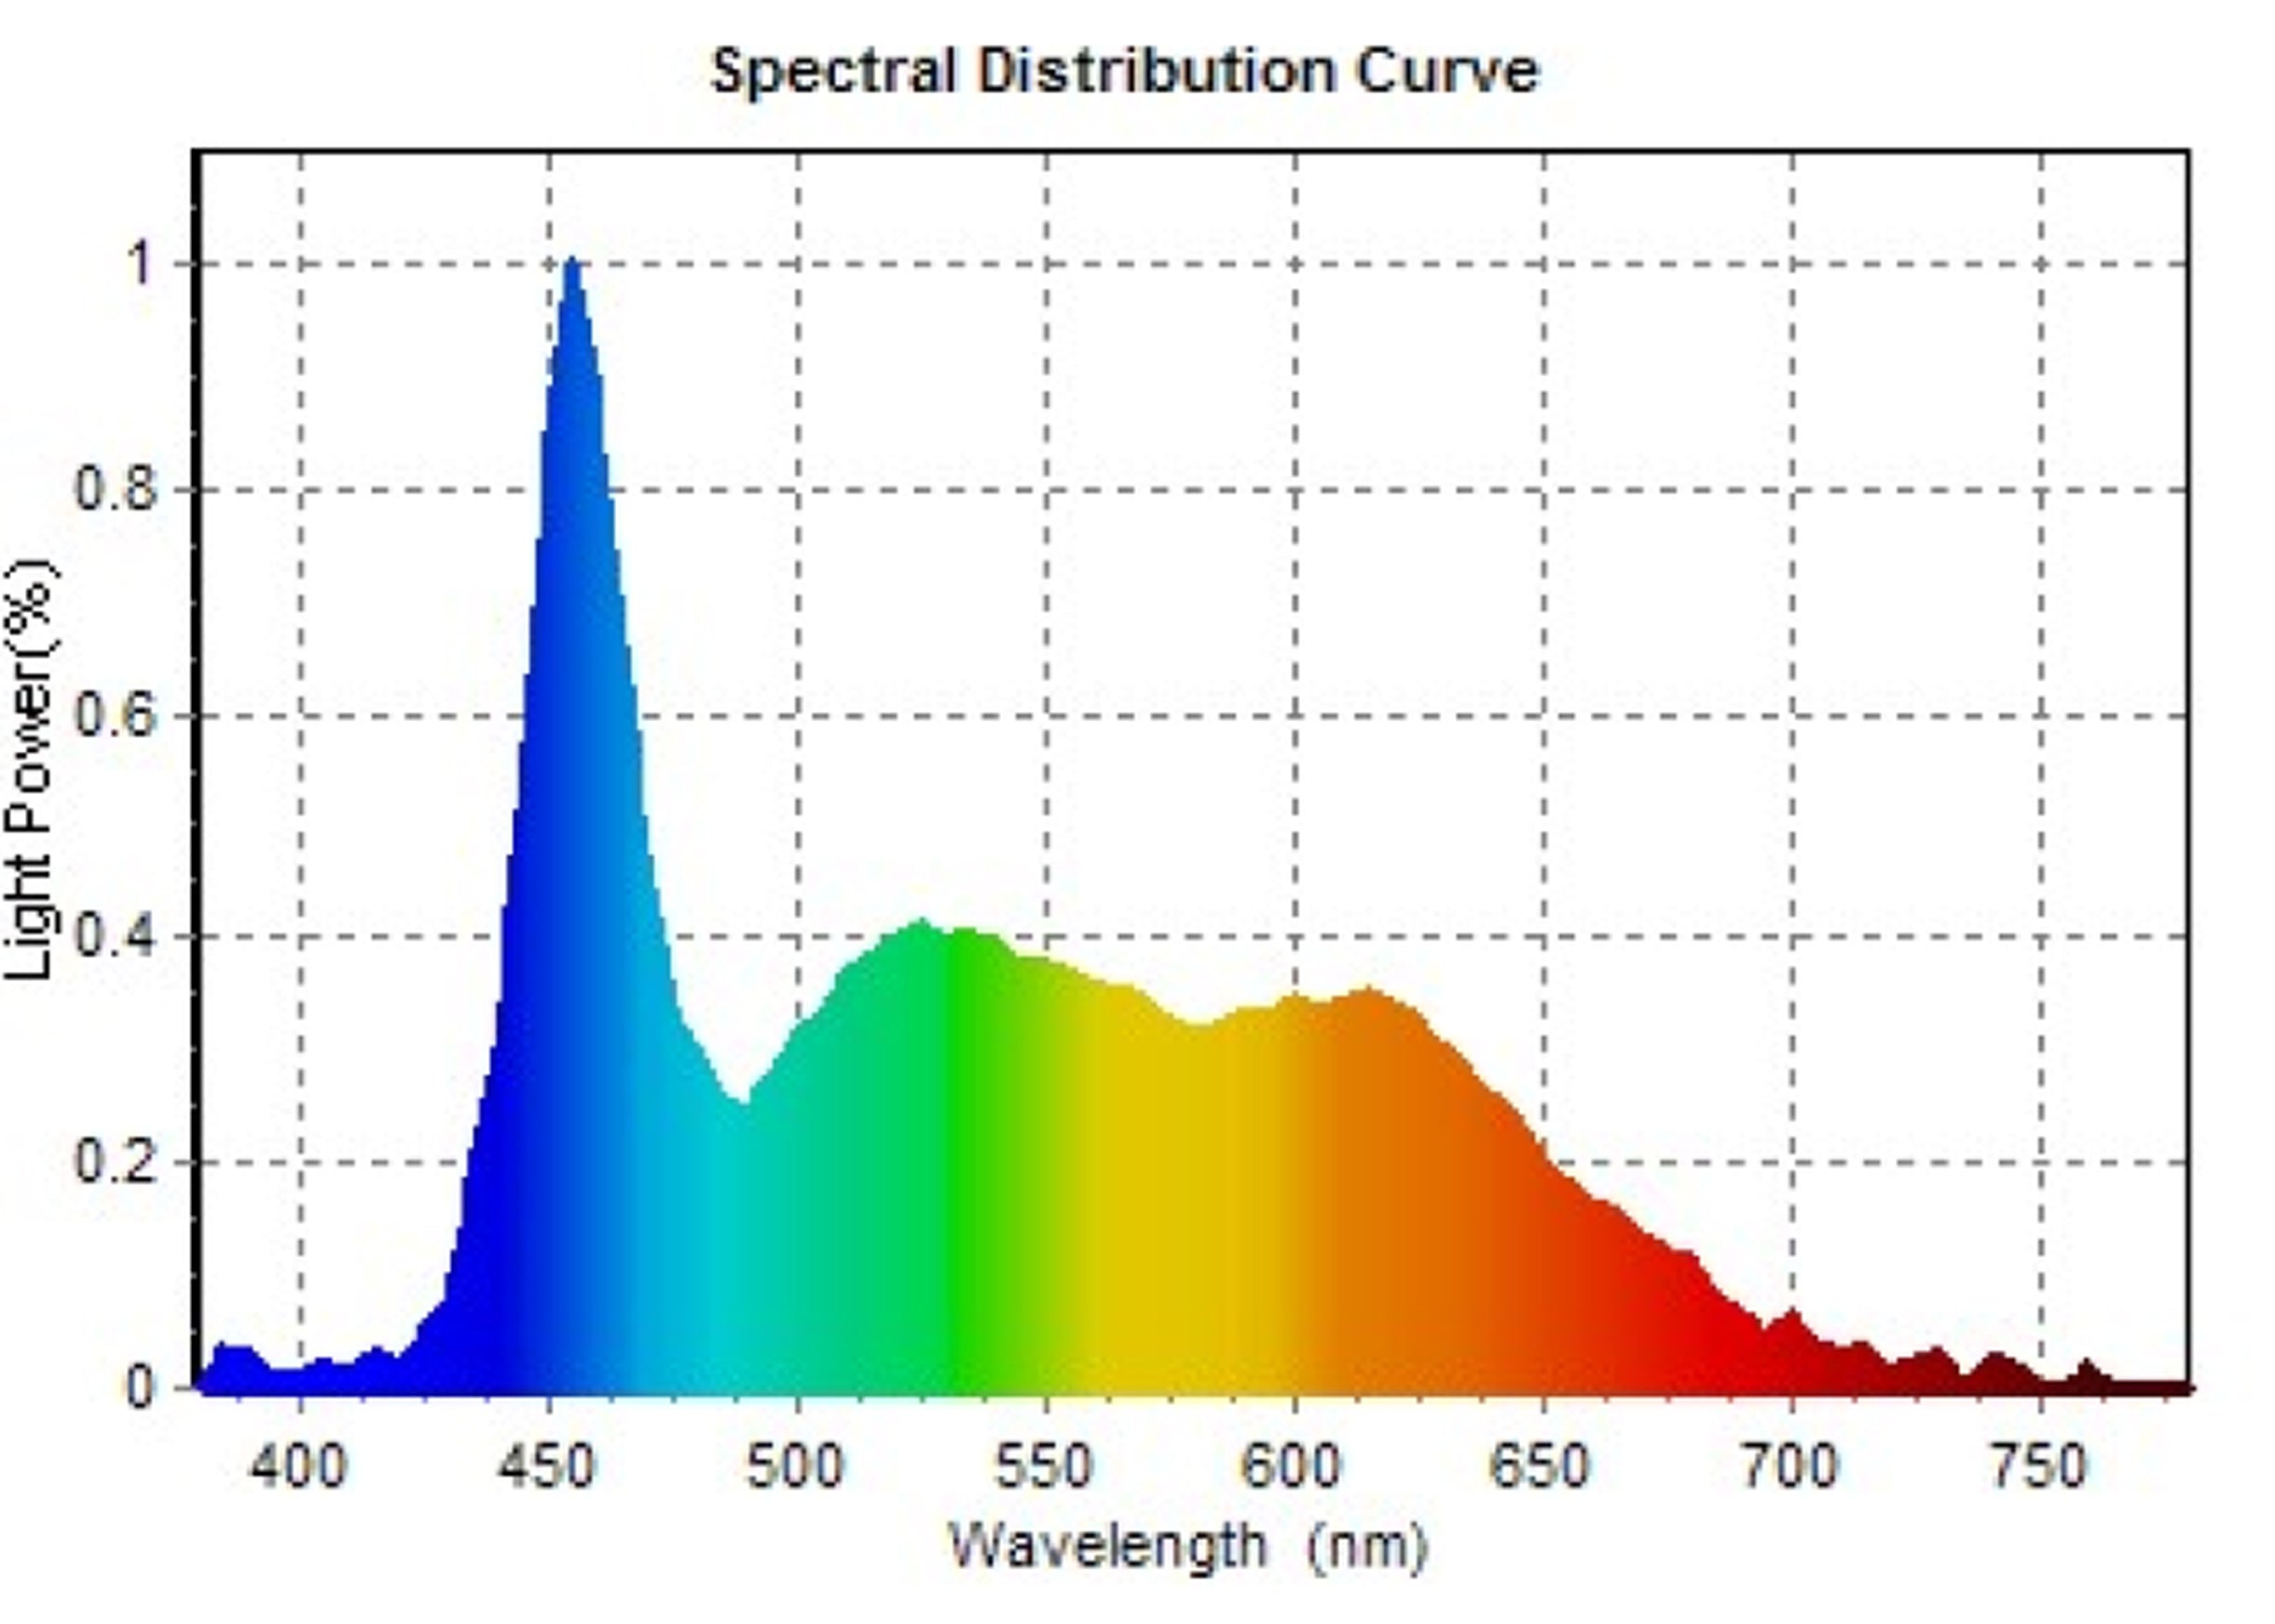 2.5" Clip-On Full Spectrum LED Aquarium Plant Light by Lifegard Aquatics